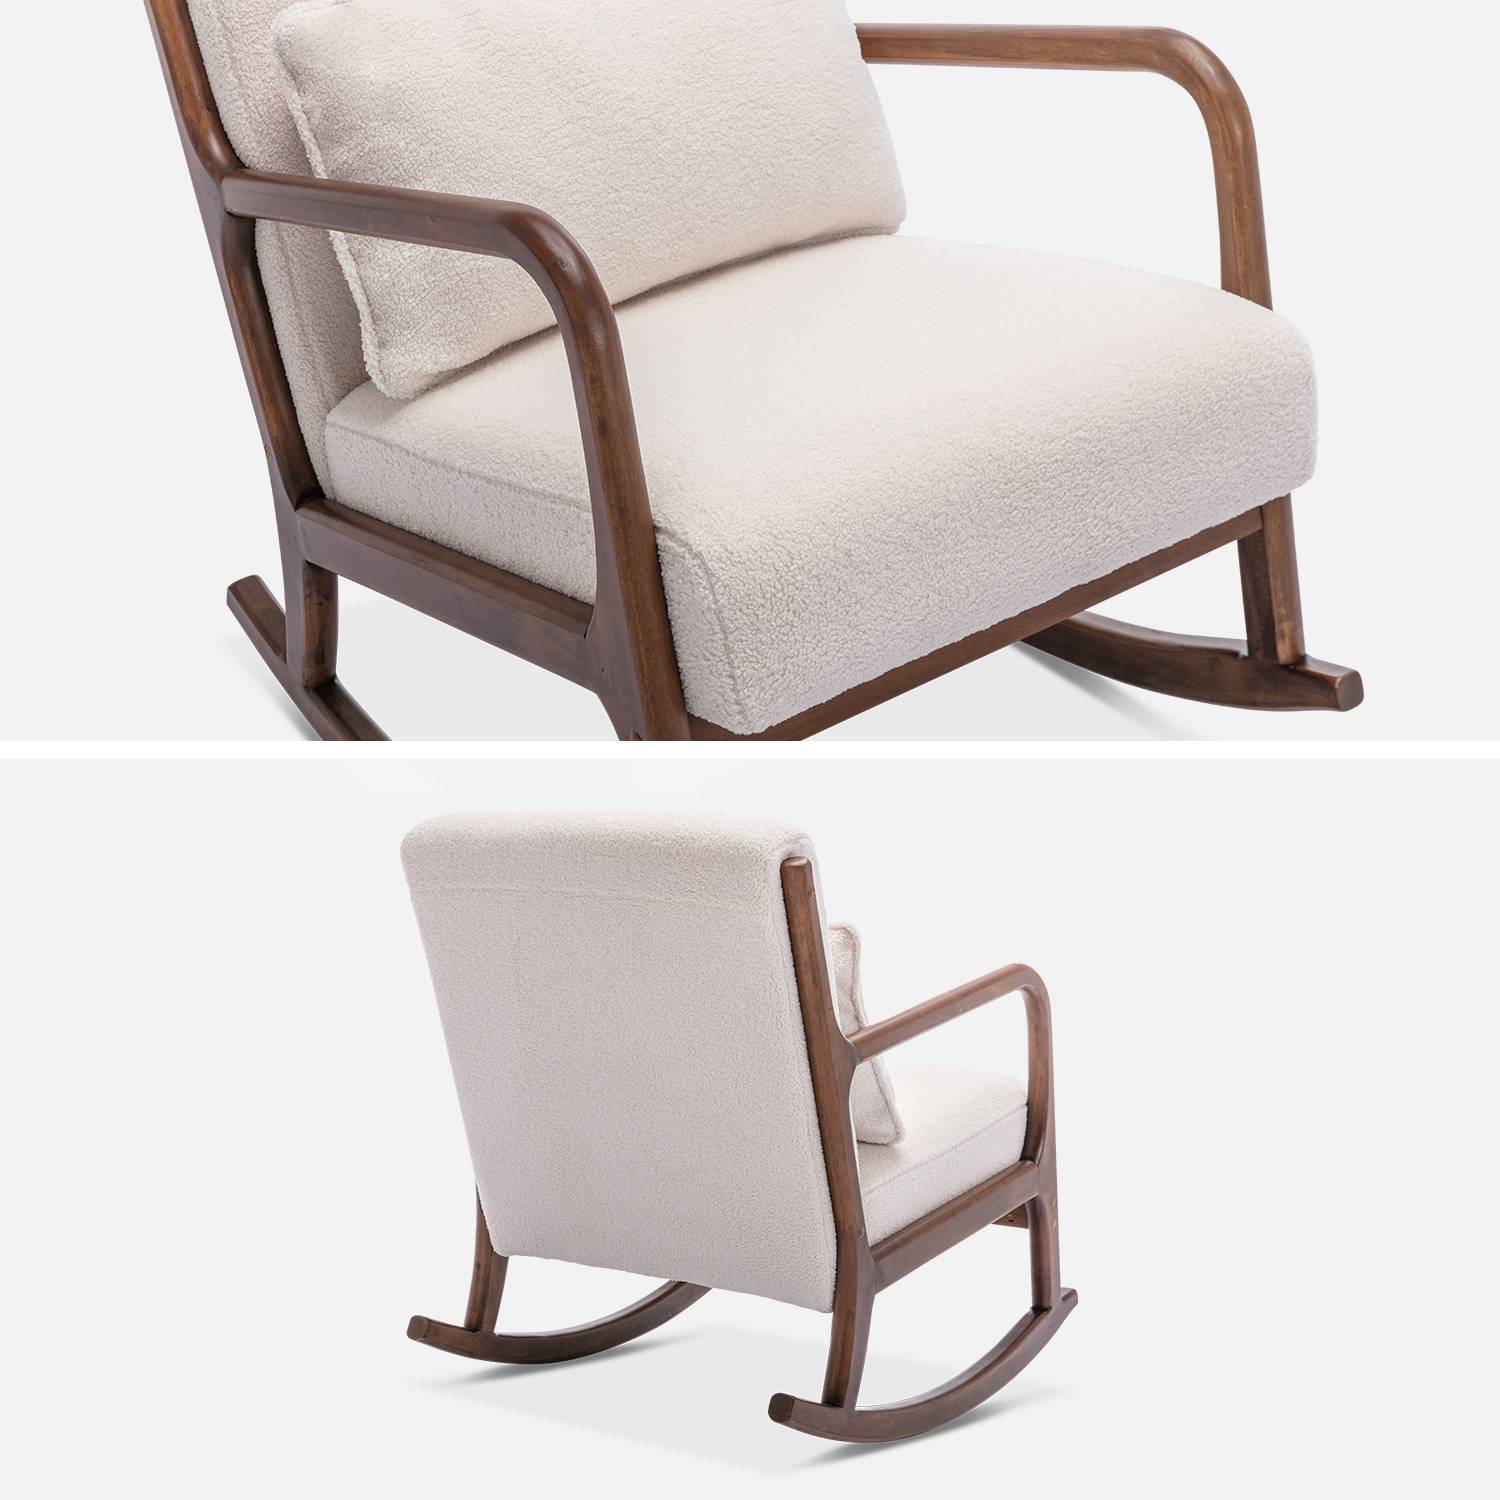 Design-Schaukelstuhl aus Holz und Bouclé-Stoff in Weiß, 1 Sitz, Schaukelstuhl in skandinavischem Design Photo6